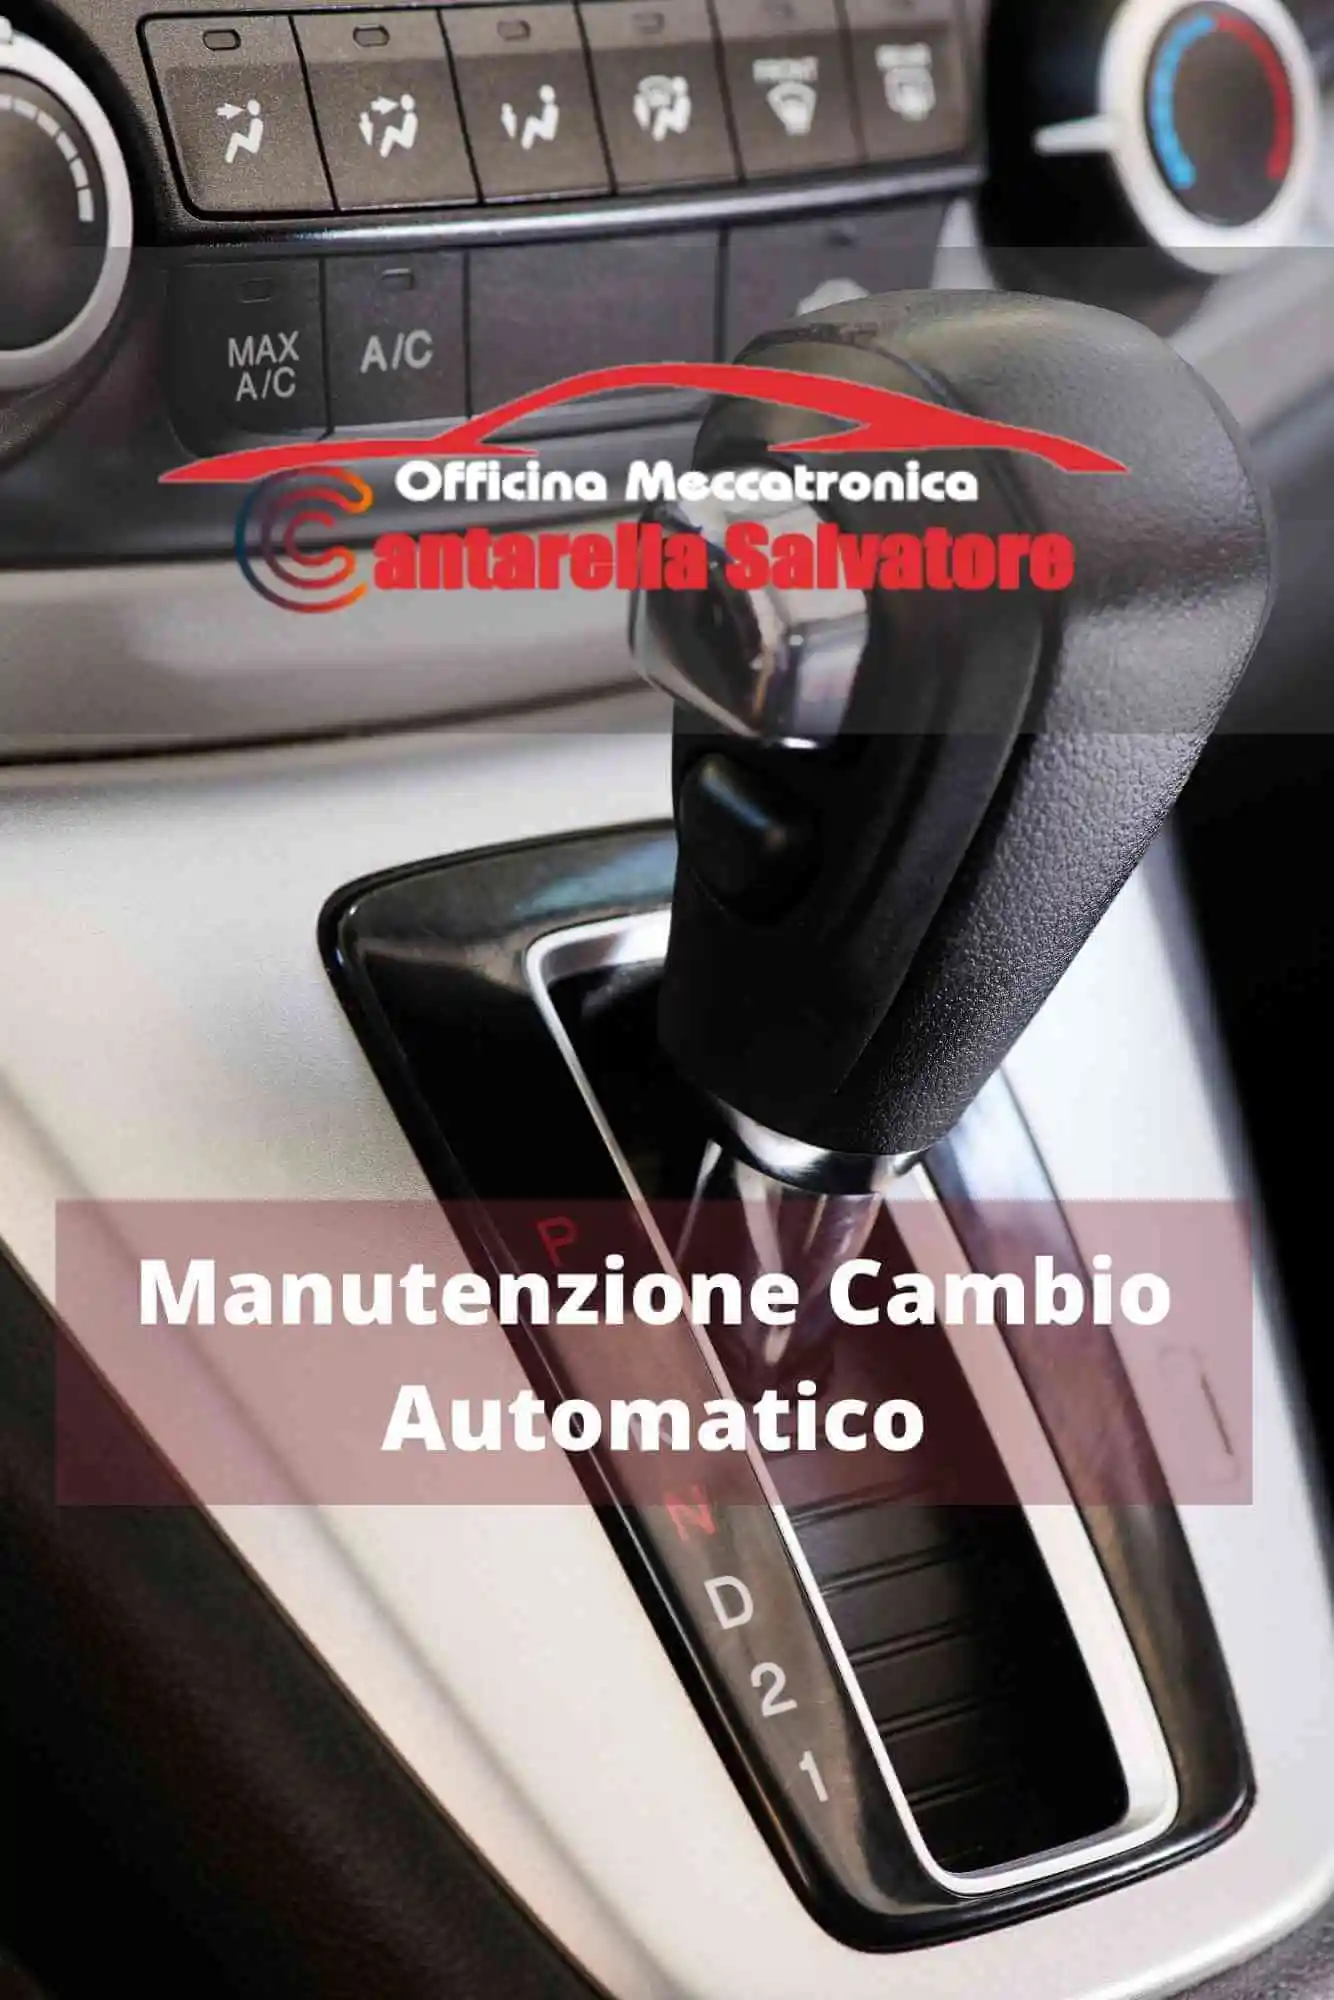 manutenzione cambio automatico - meccatronica Cantarella